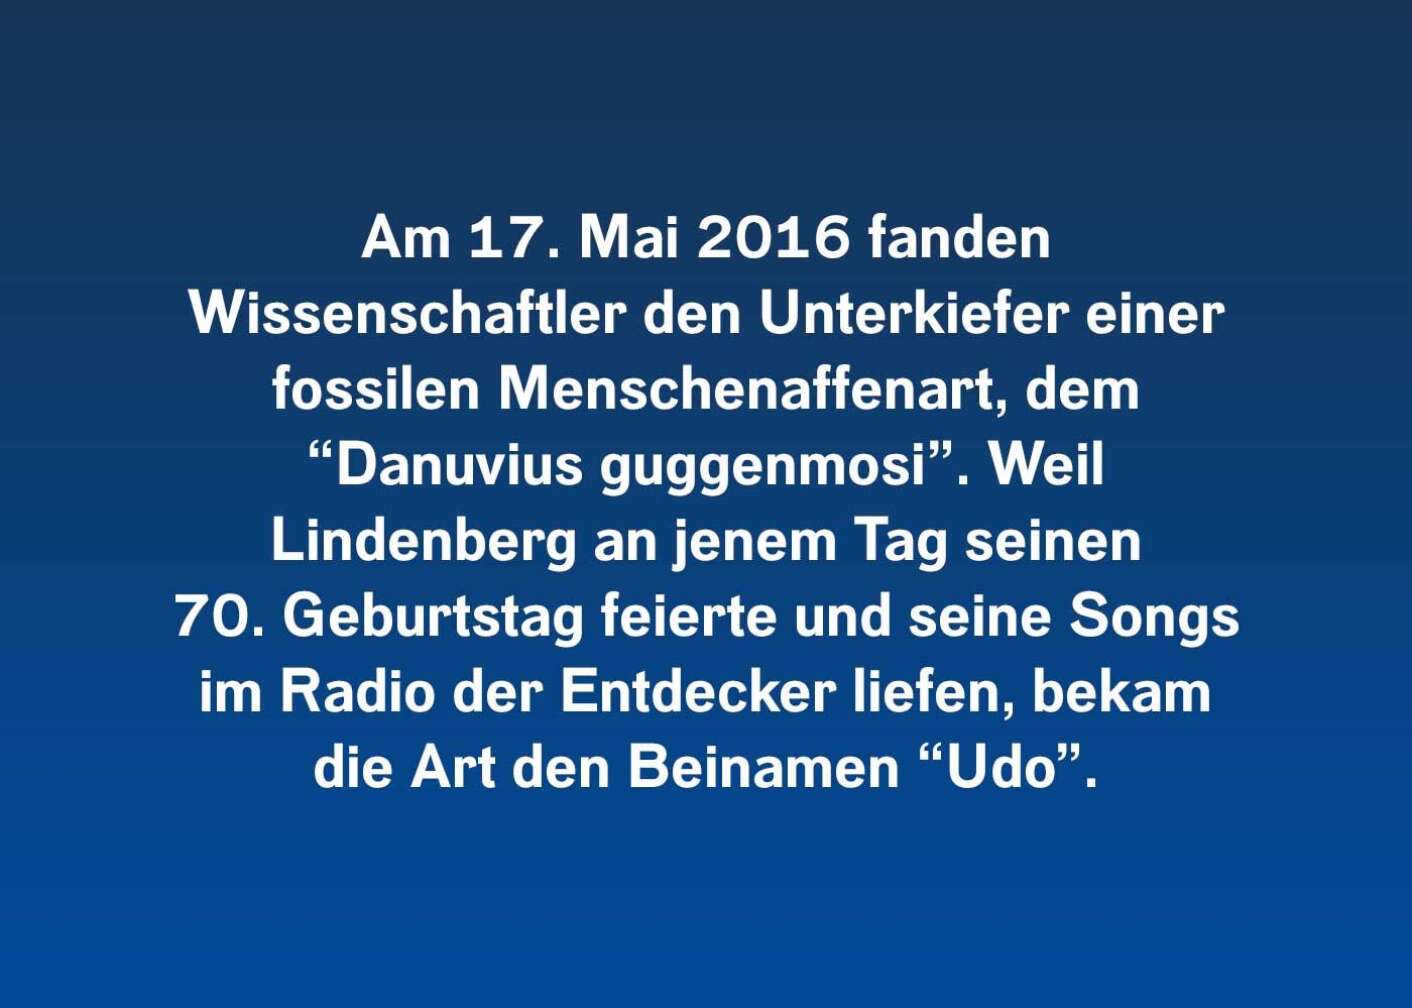 6 Fakten über Udo Lindenberg